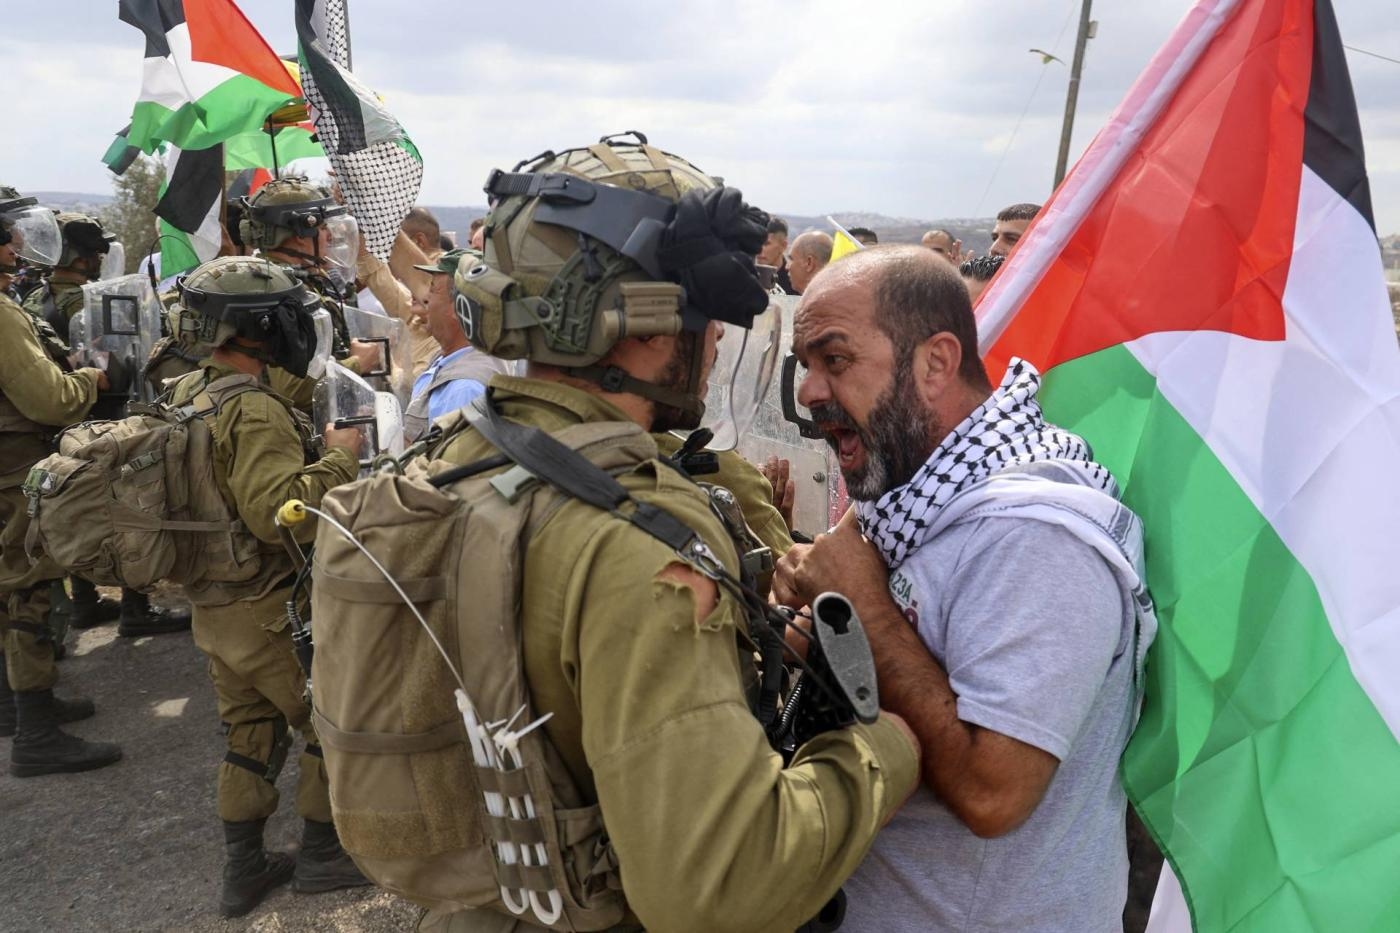 Un manifestant palestinien affronte les forces de sécurité israéliennes lors d’une manifestation contre l’expropriation de terres palestiniennes par Israël dans le village de Kfar Qaddum en Cisjordanie occupée près de la colonie juive de Kedumim, le 7 octobre 2022 (AFP/Jaafar Ashtiyeh)